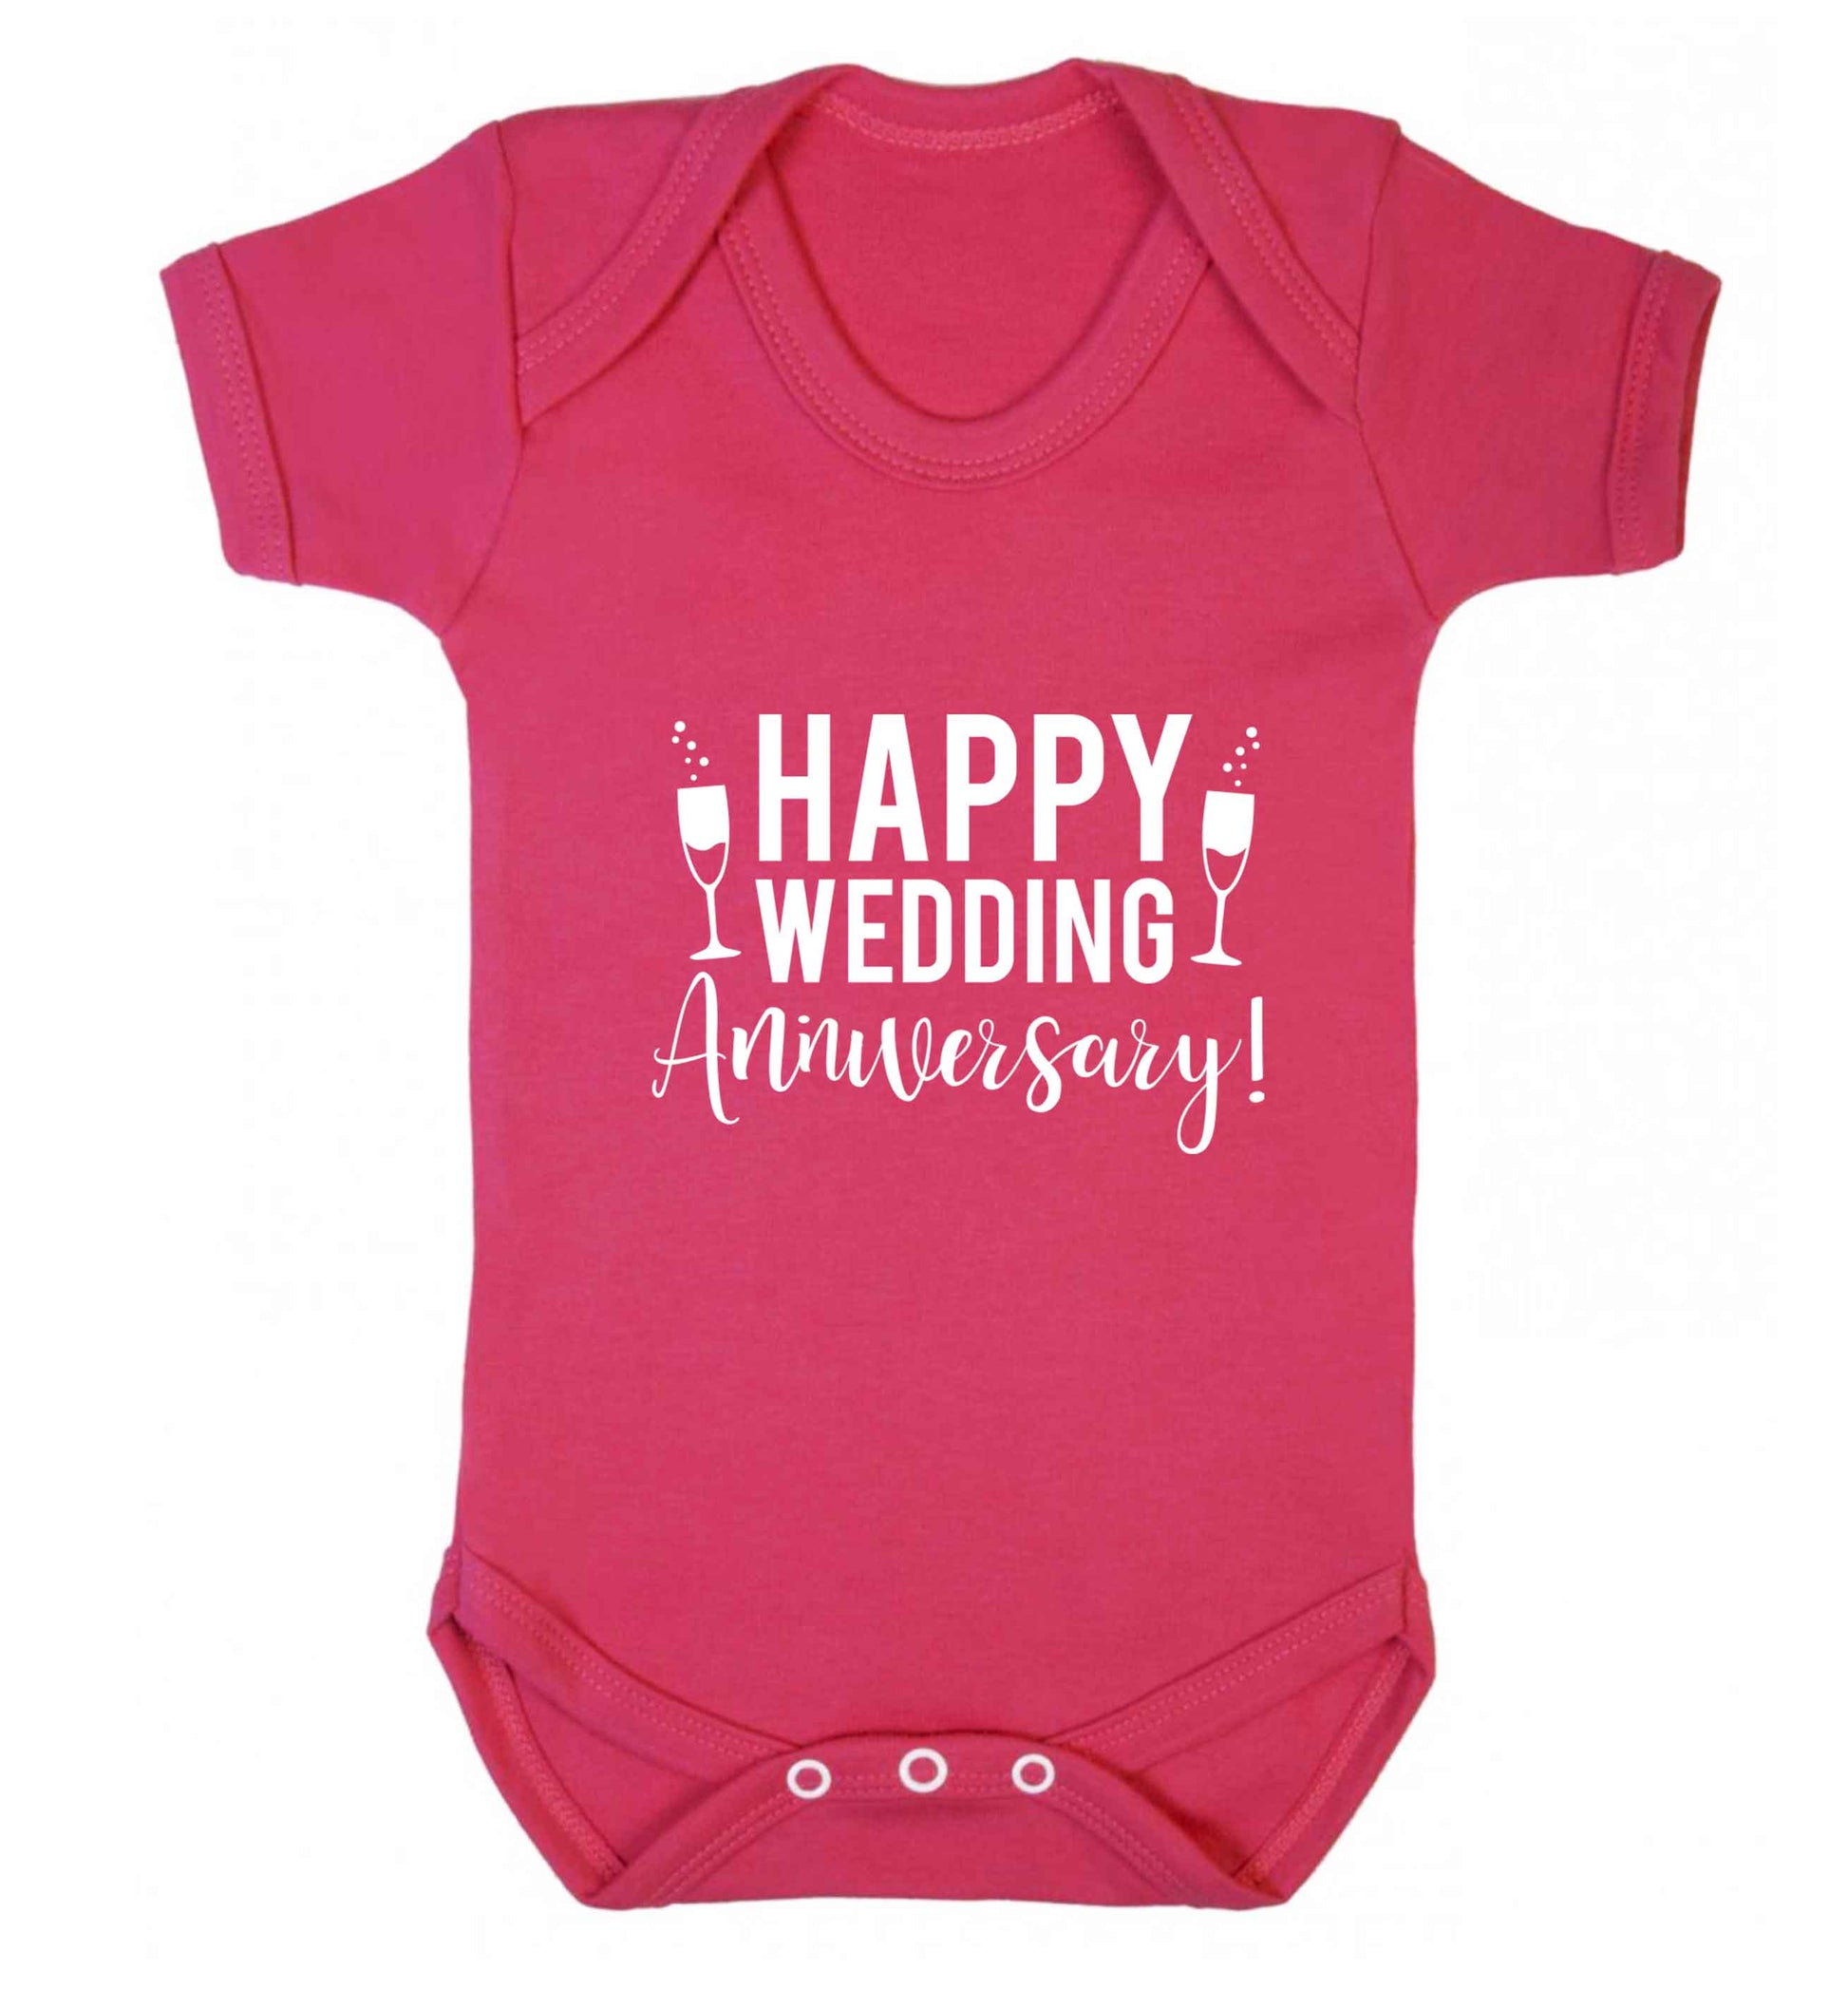 Happy wedding anniversary! baby vest dark pink 18-24 months